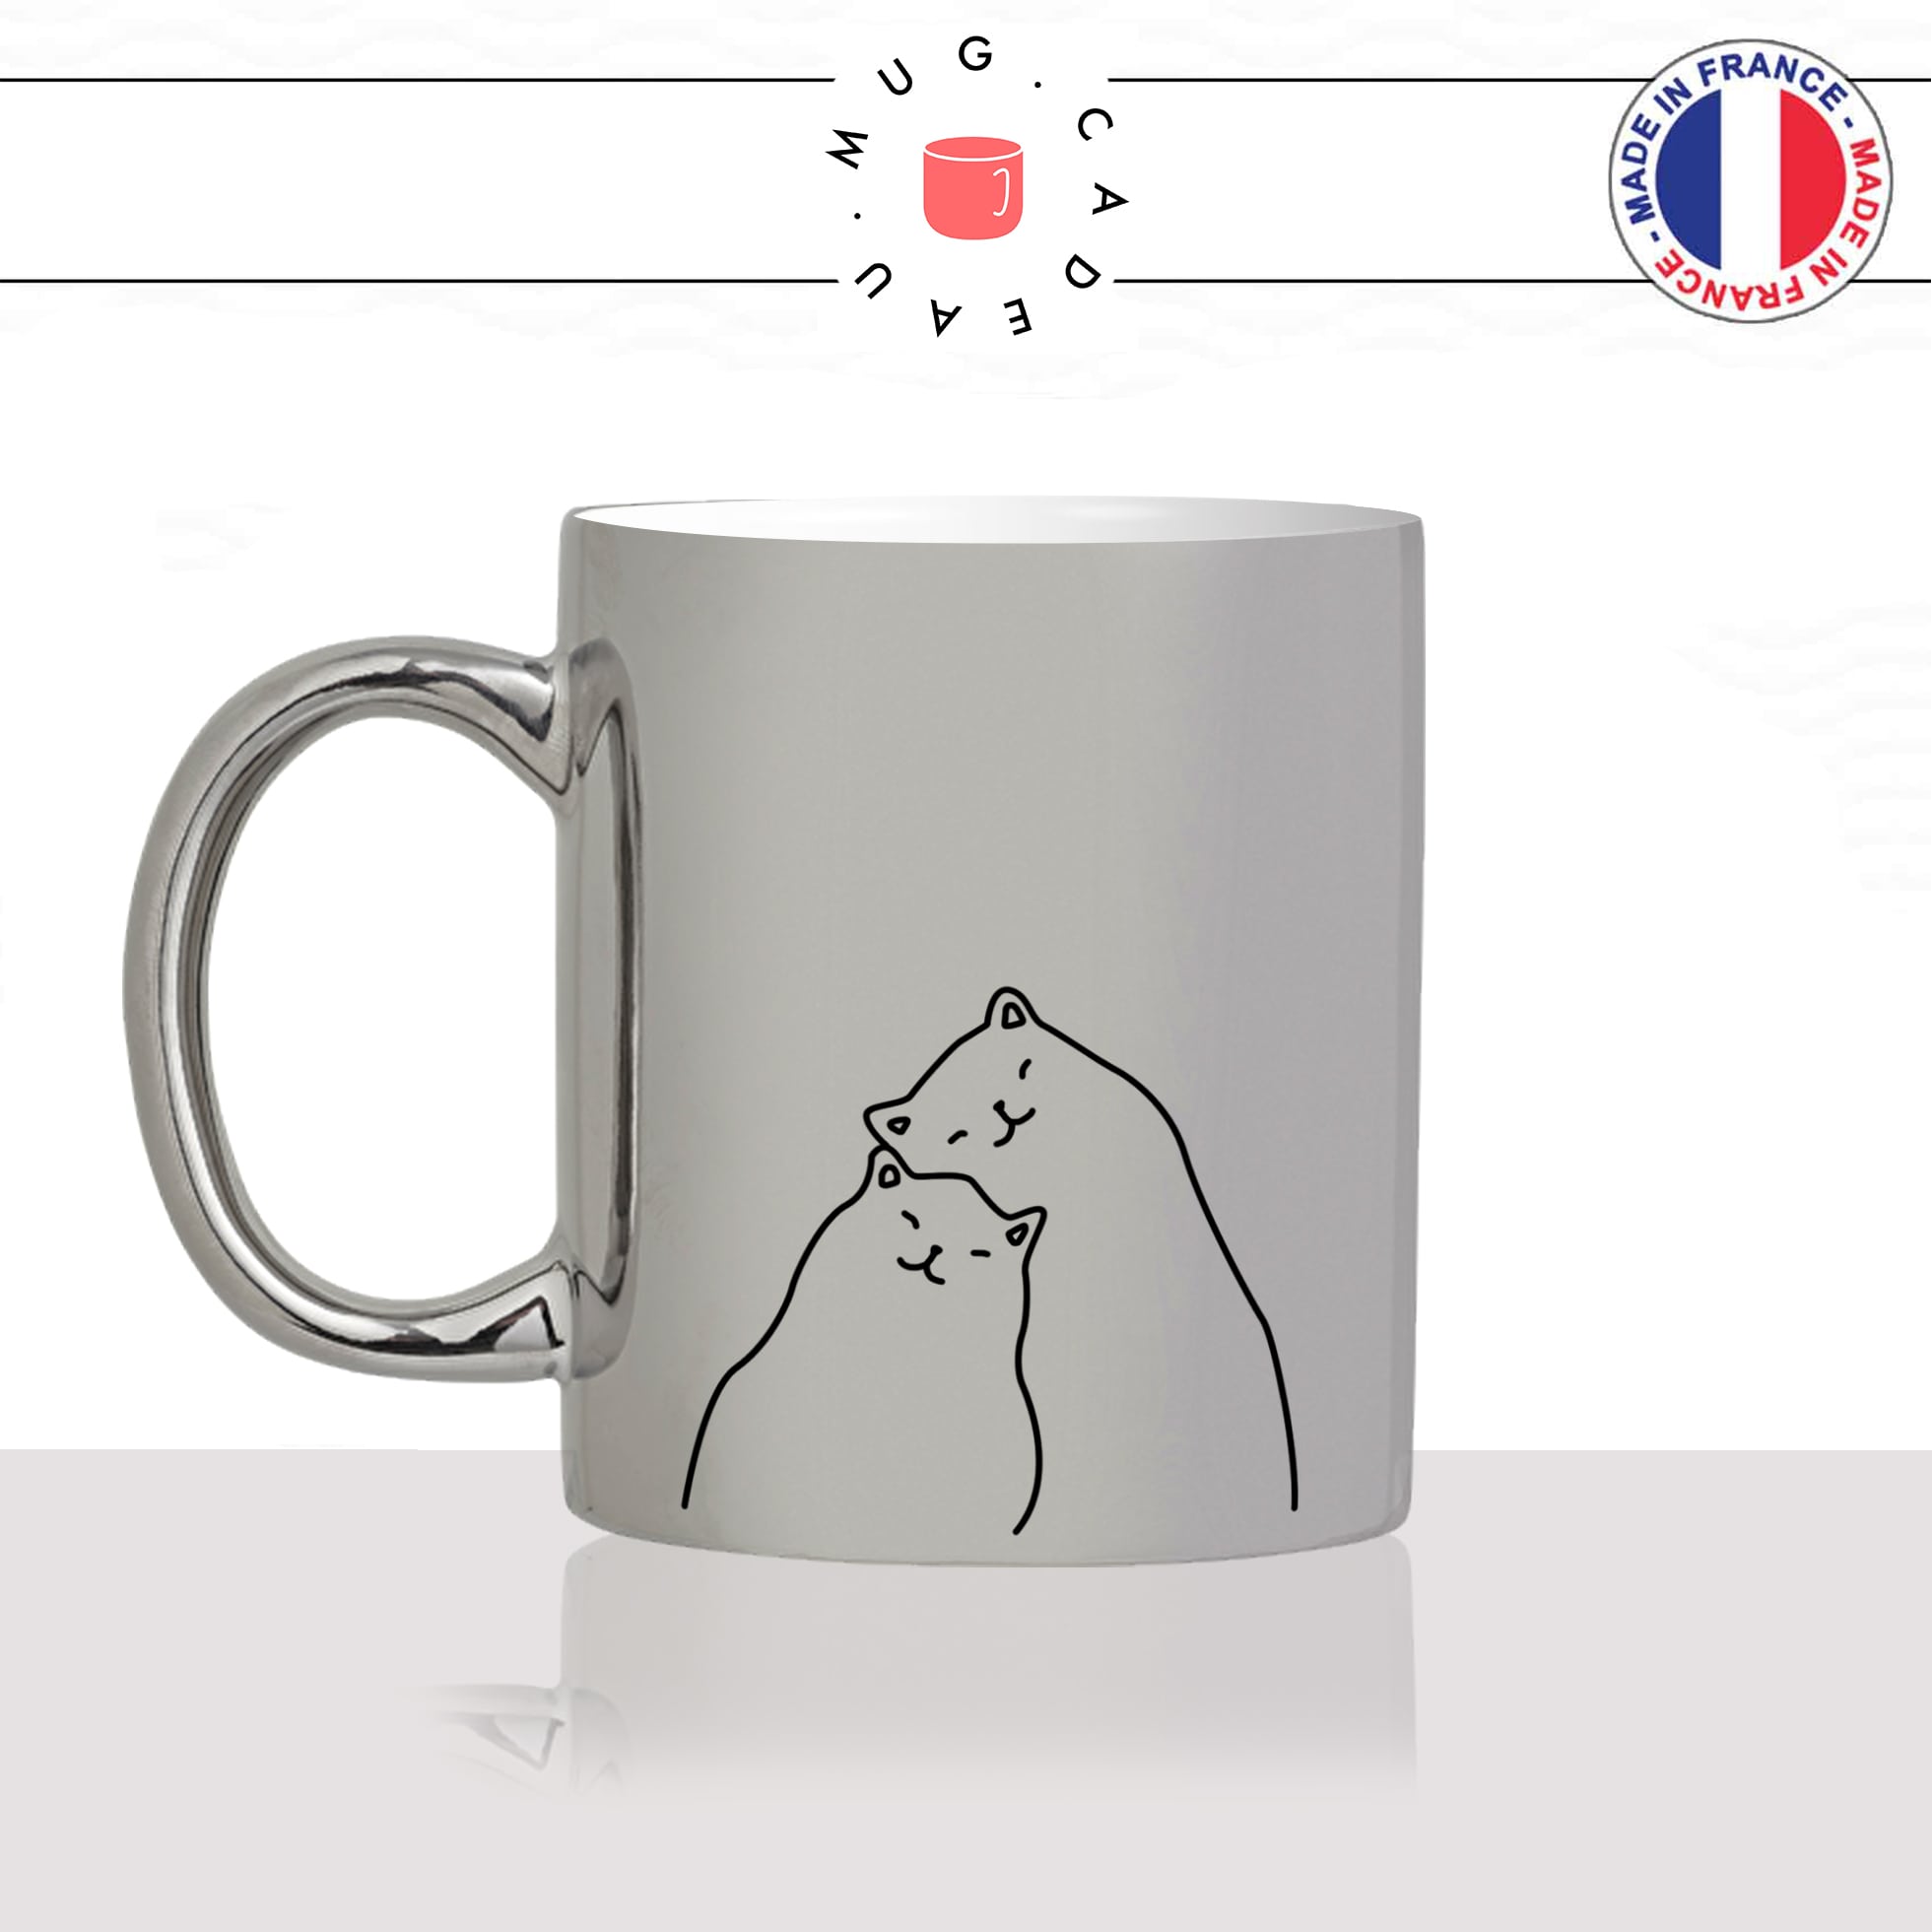 mug-tasse-argenté-silver-amoureux-couple-amour-chats-mignon-animal-chaton-dessin-noir-fun-café-thé-idée-cadeau-original-personnalisé-min